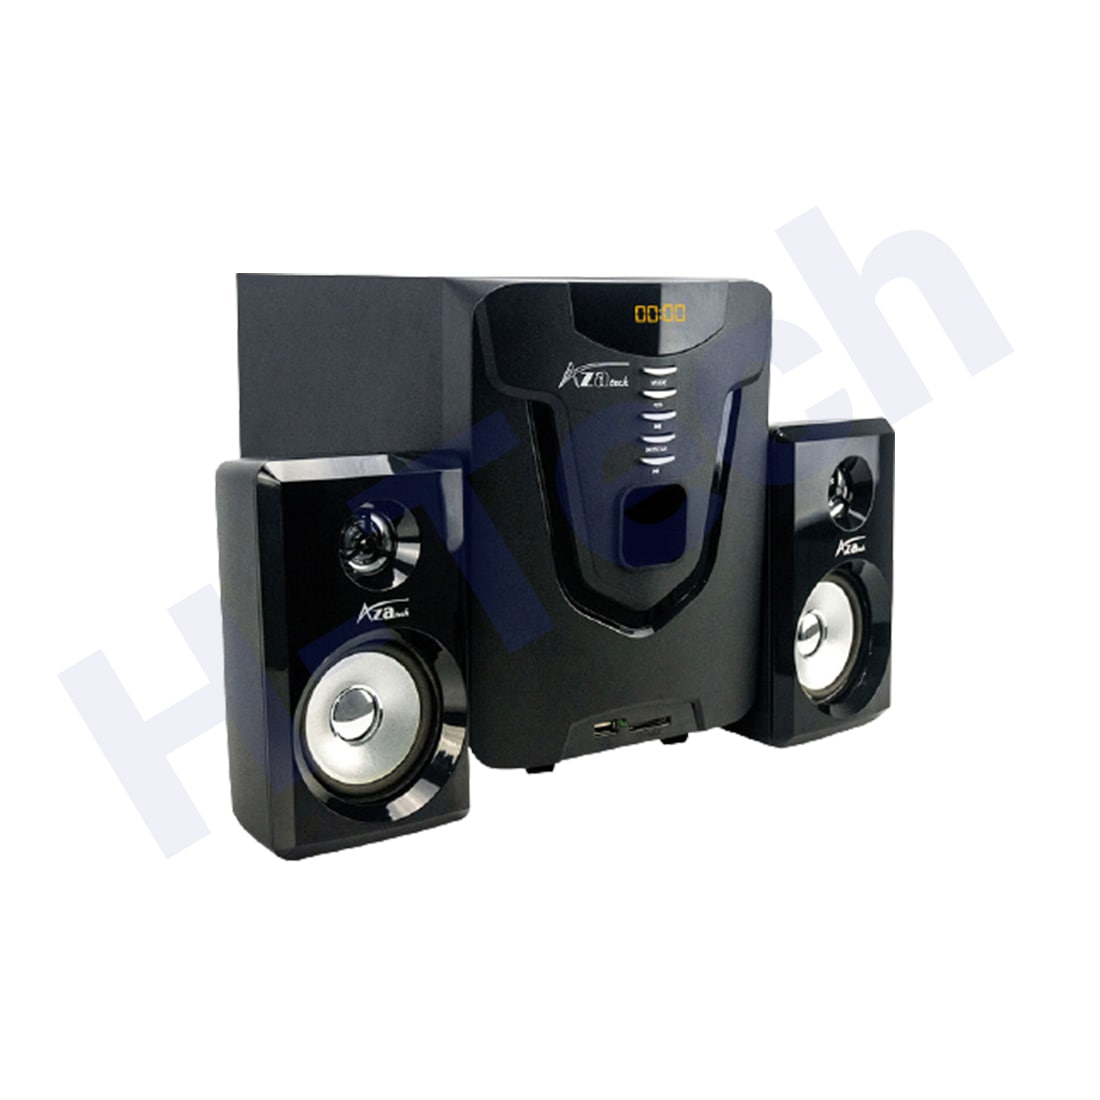 azatech az-707 channel multimedia speakers 2.1